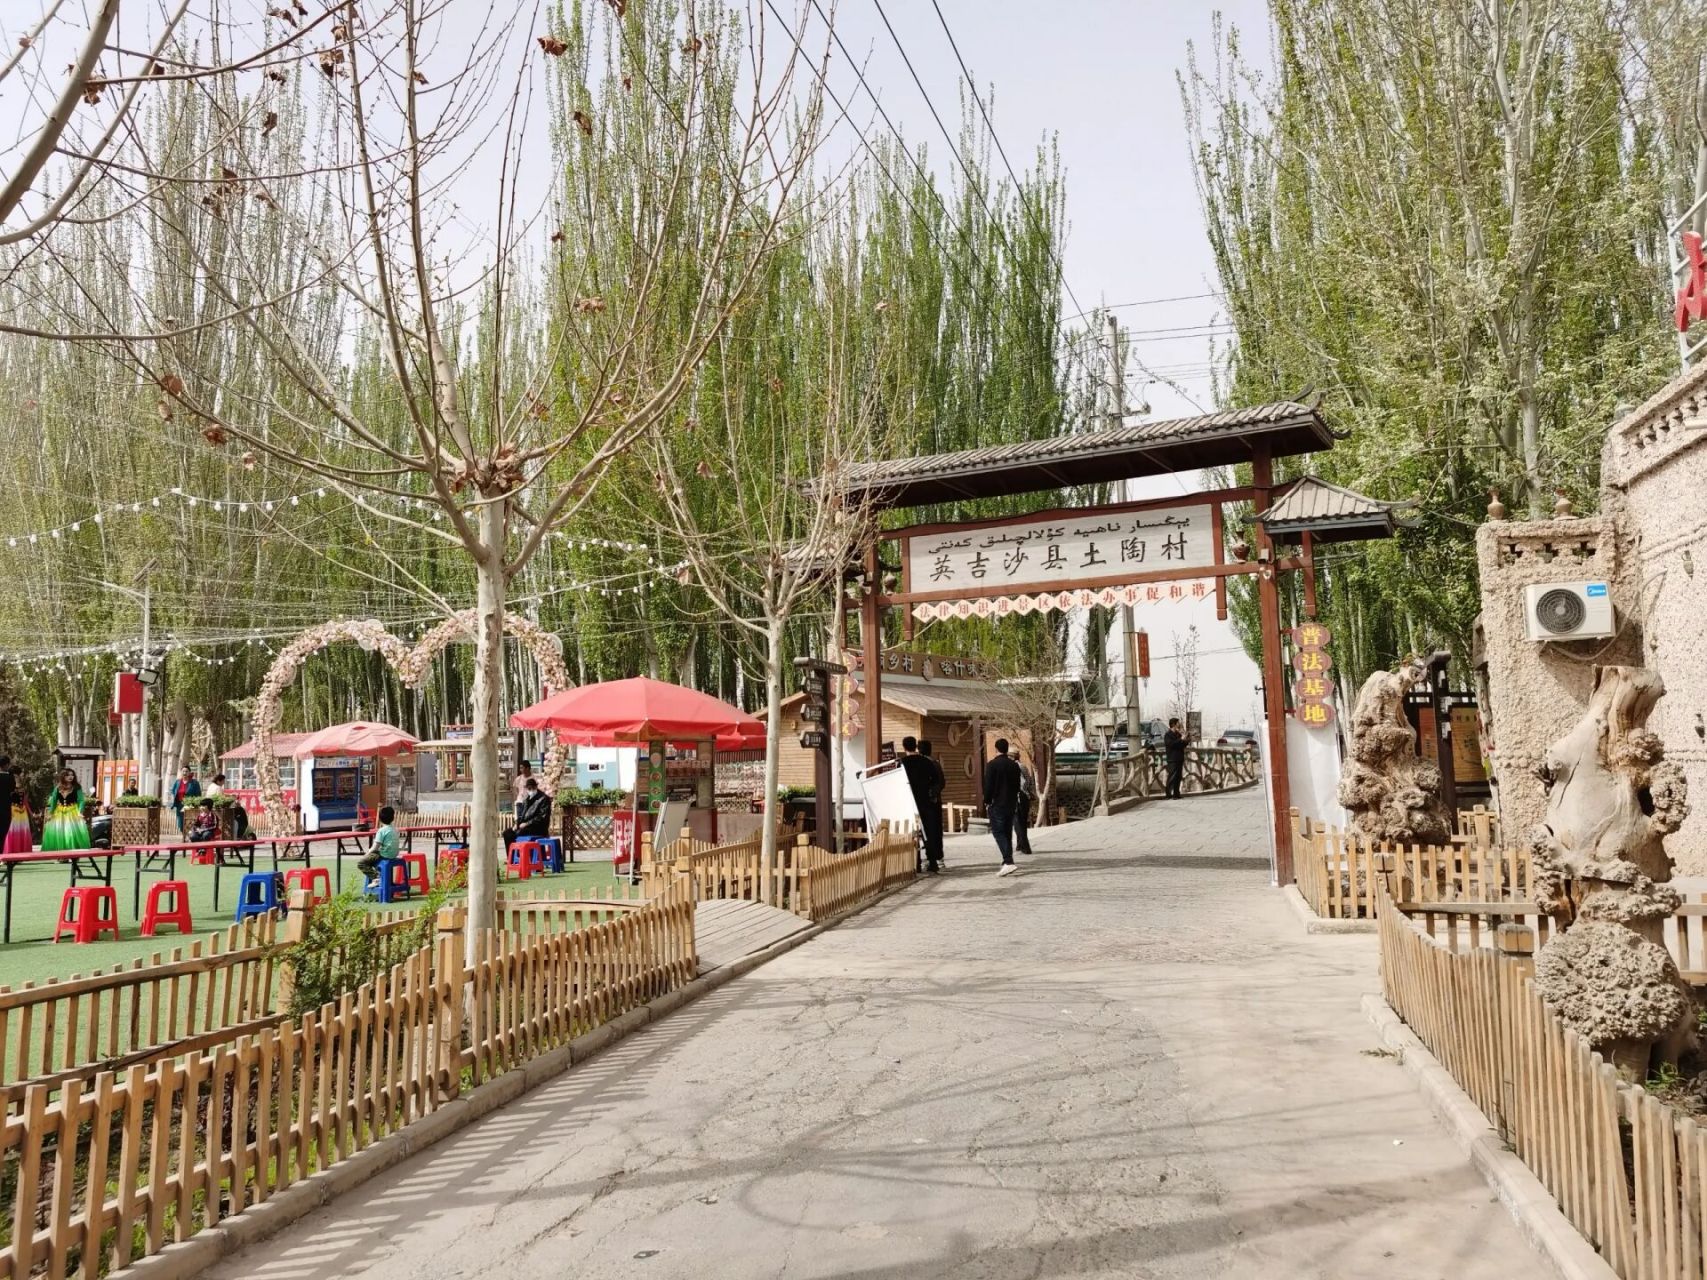 英吉沙土陶村和老街 英吉沙的老街很小,去过喀什古城再看就感觉没趣了